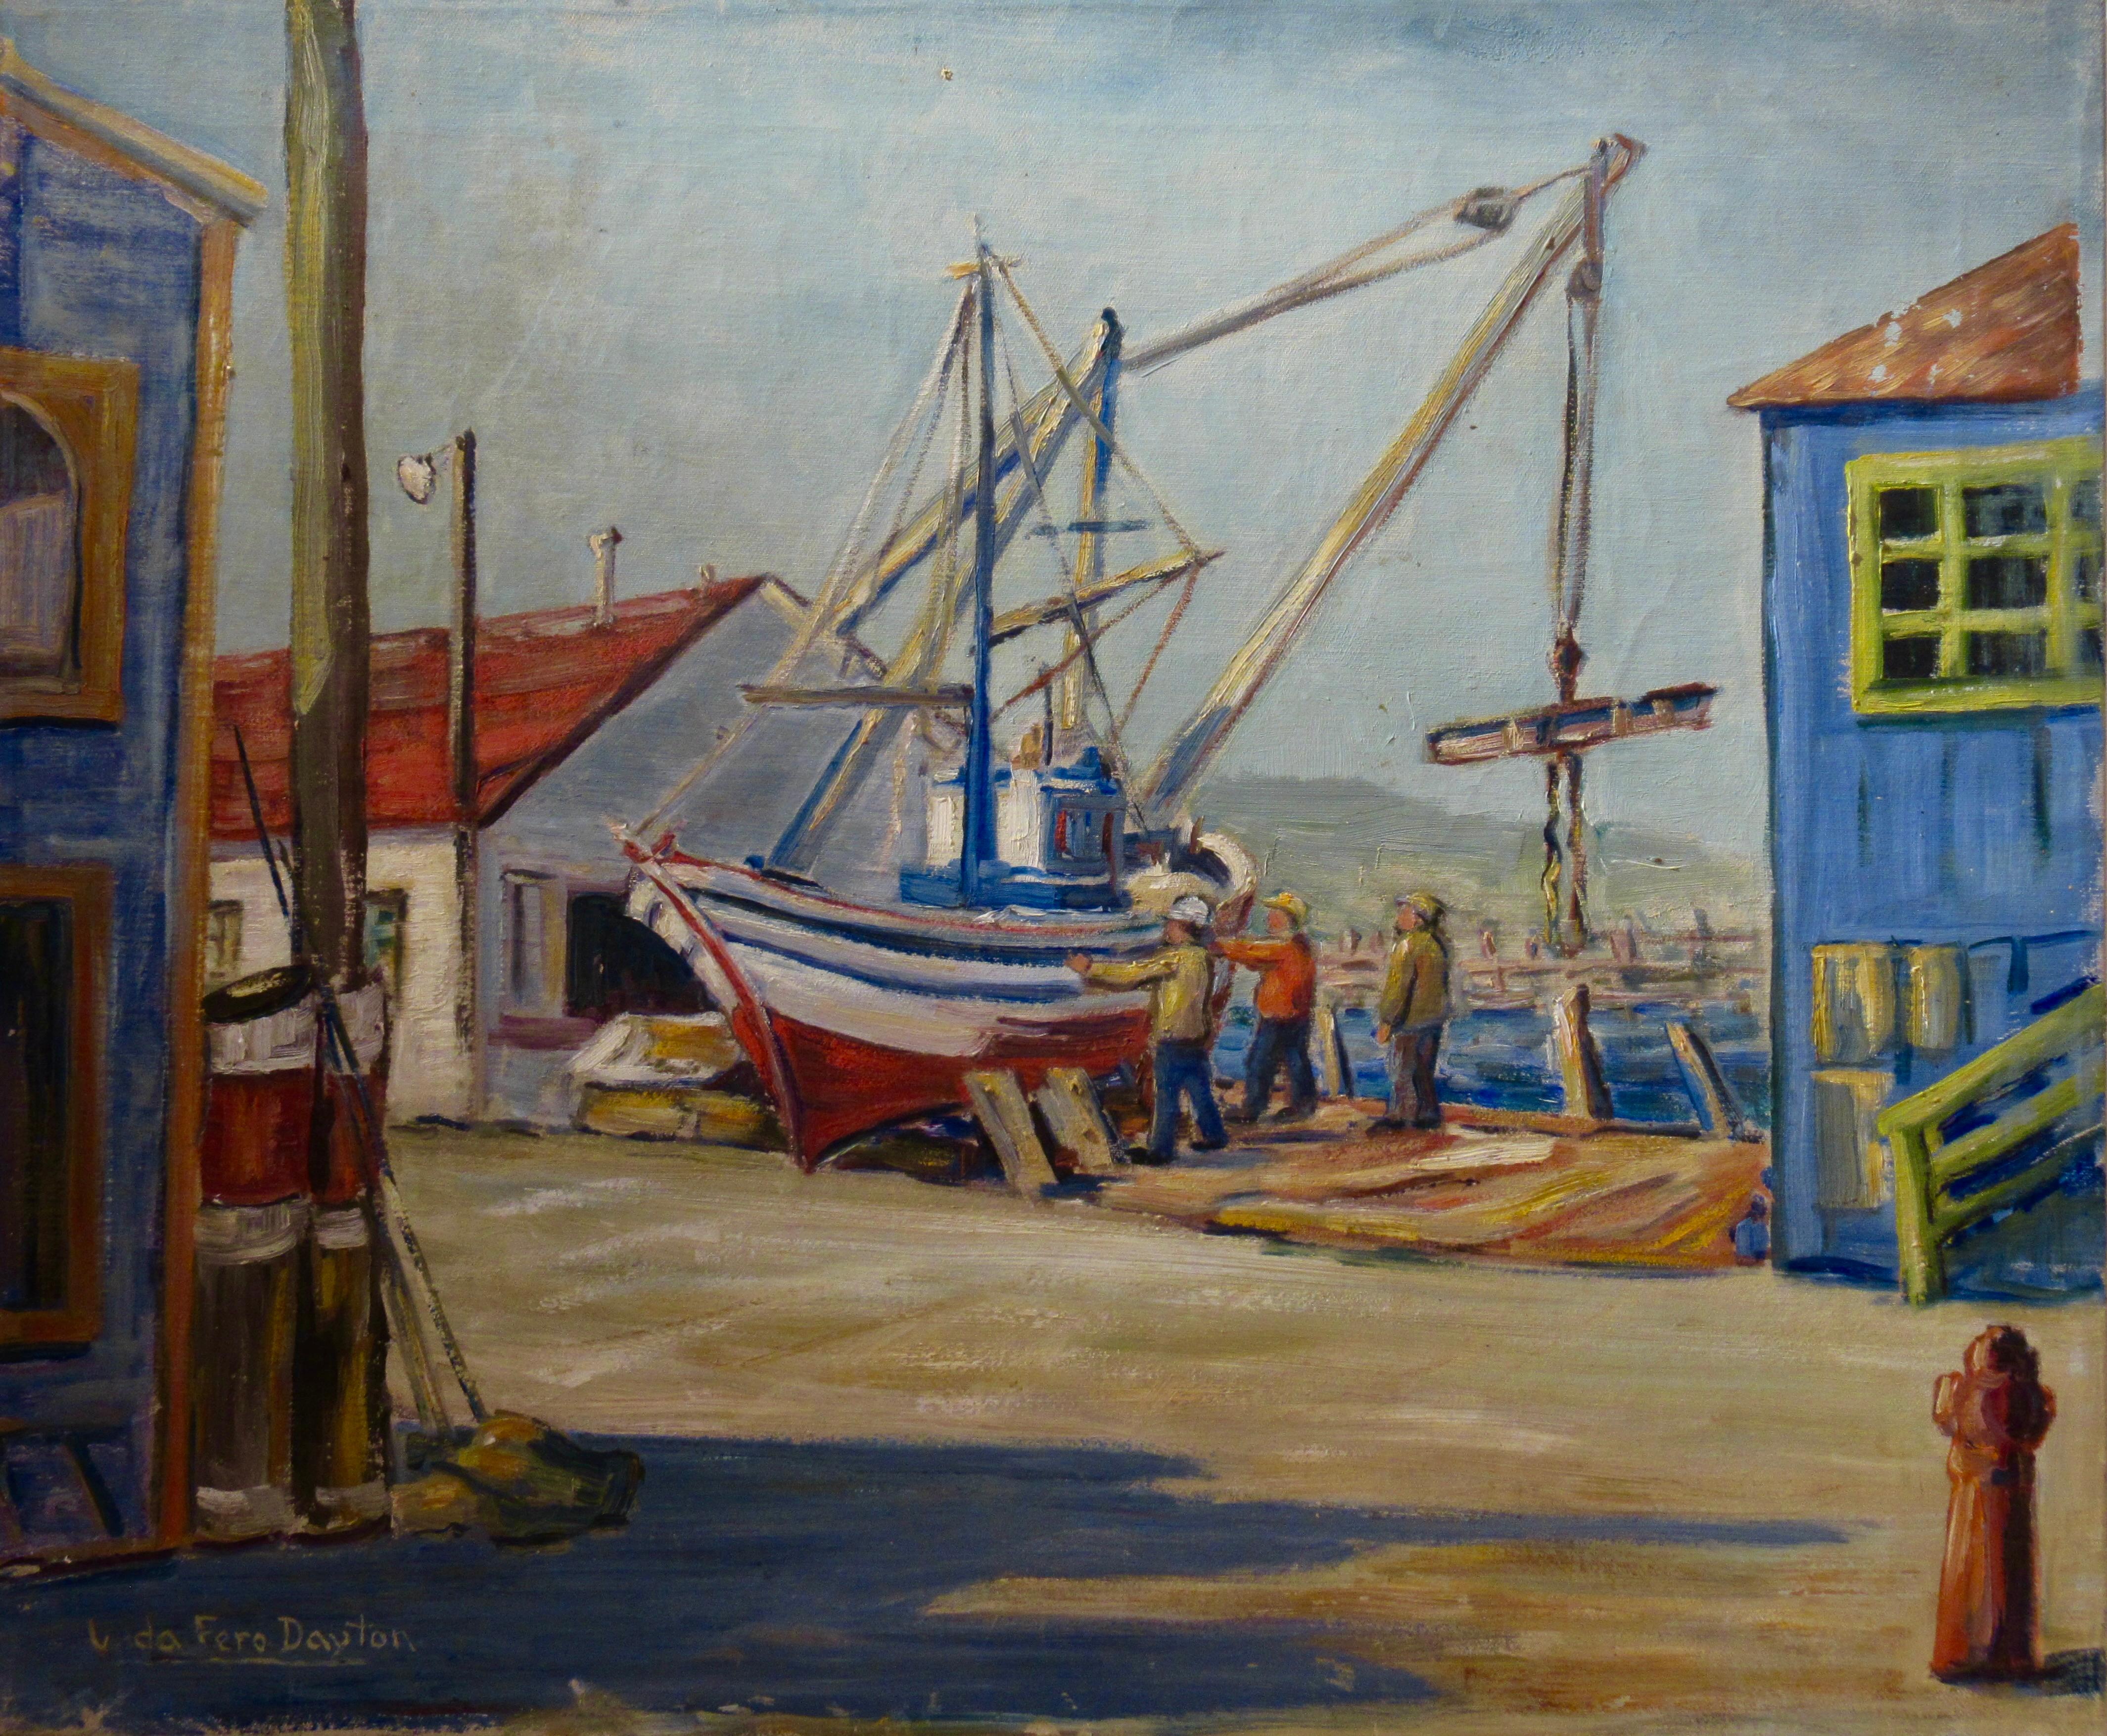 Figurative Painting Veda Fero Carnaham Dayton - Réparation de bateaux, Monterey Dock